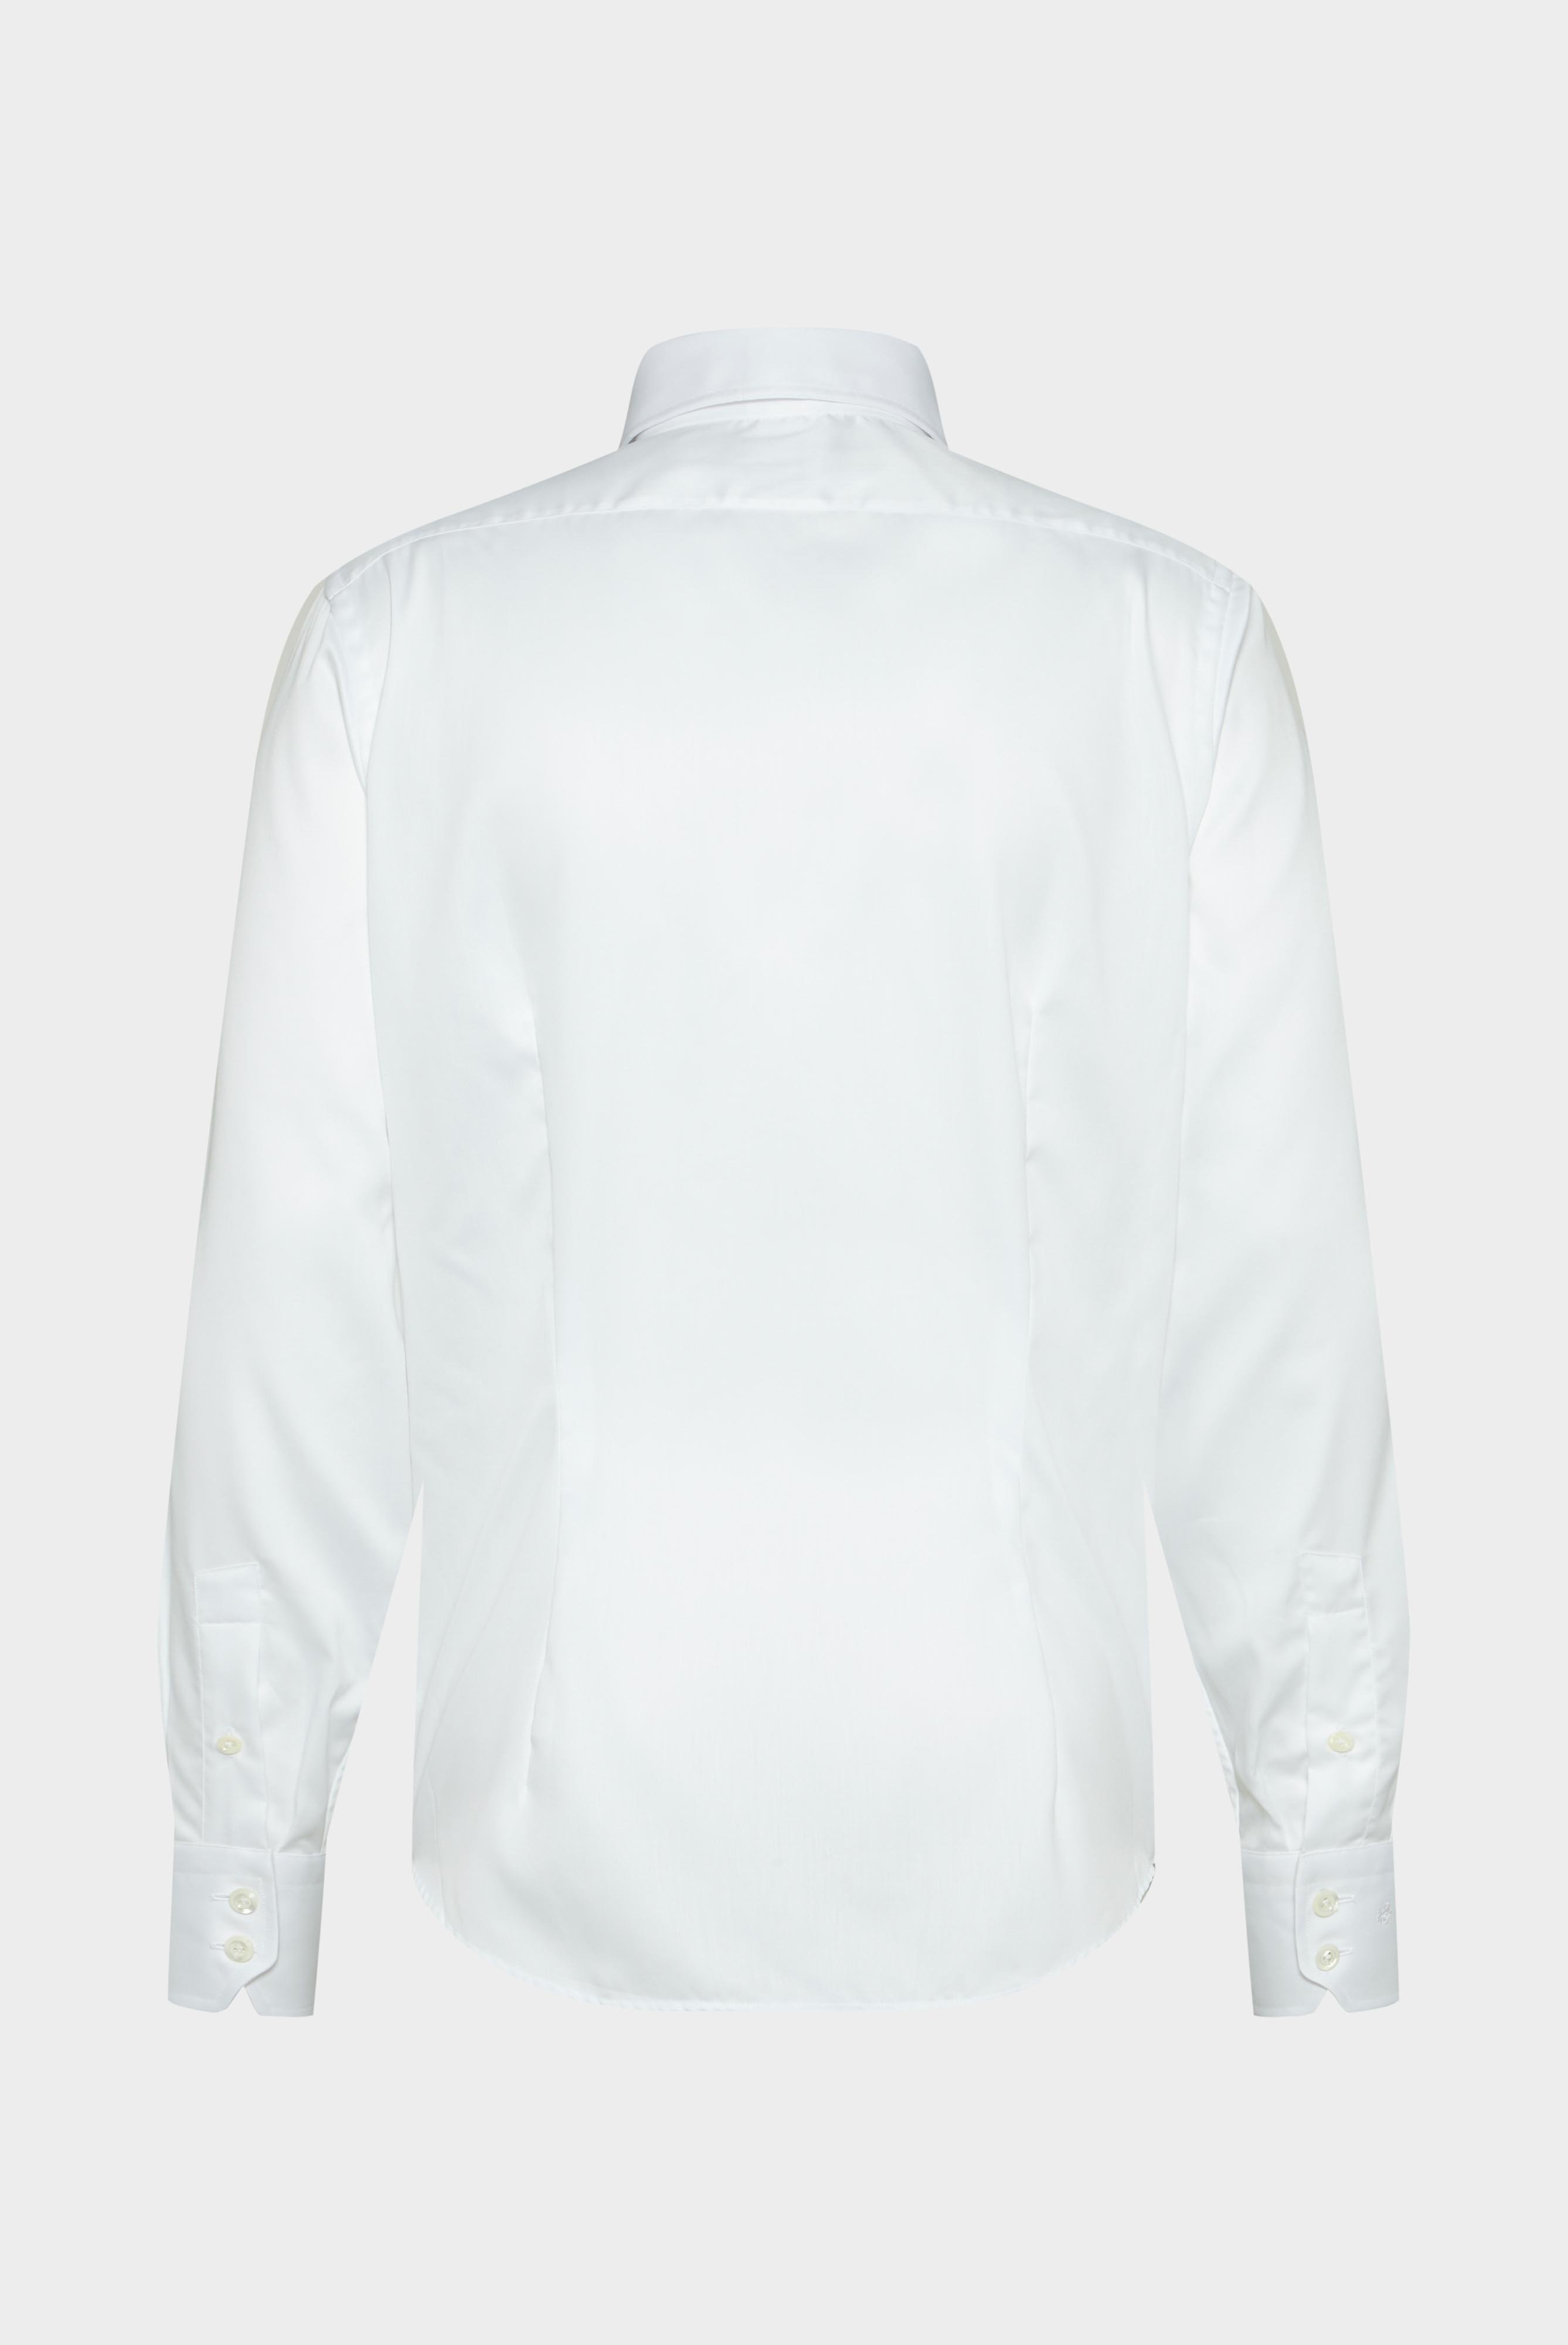 Bügelleichte Hemden+Bügelfreies Twill Hemd Tailor Fit+20.2020.FQ.132241.000.43